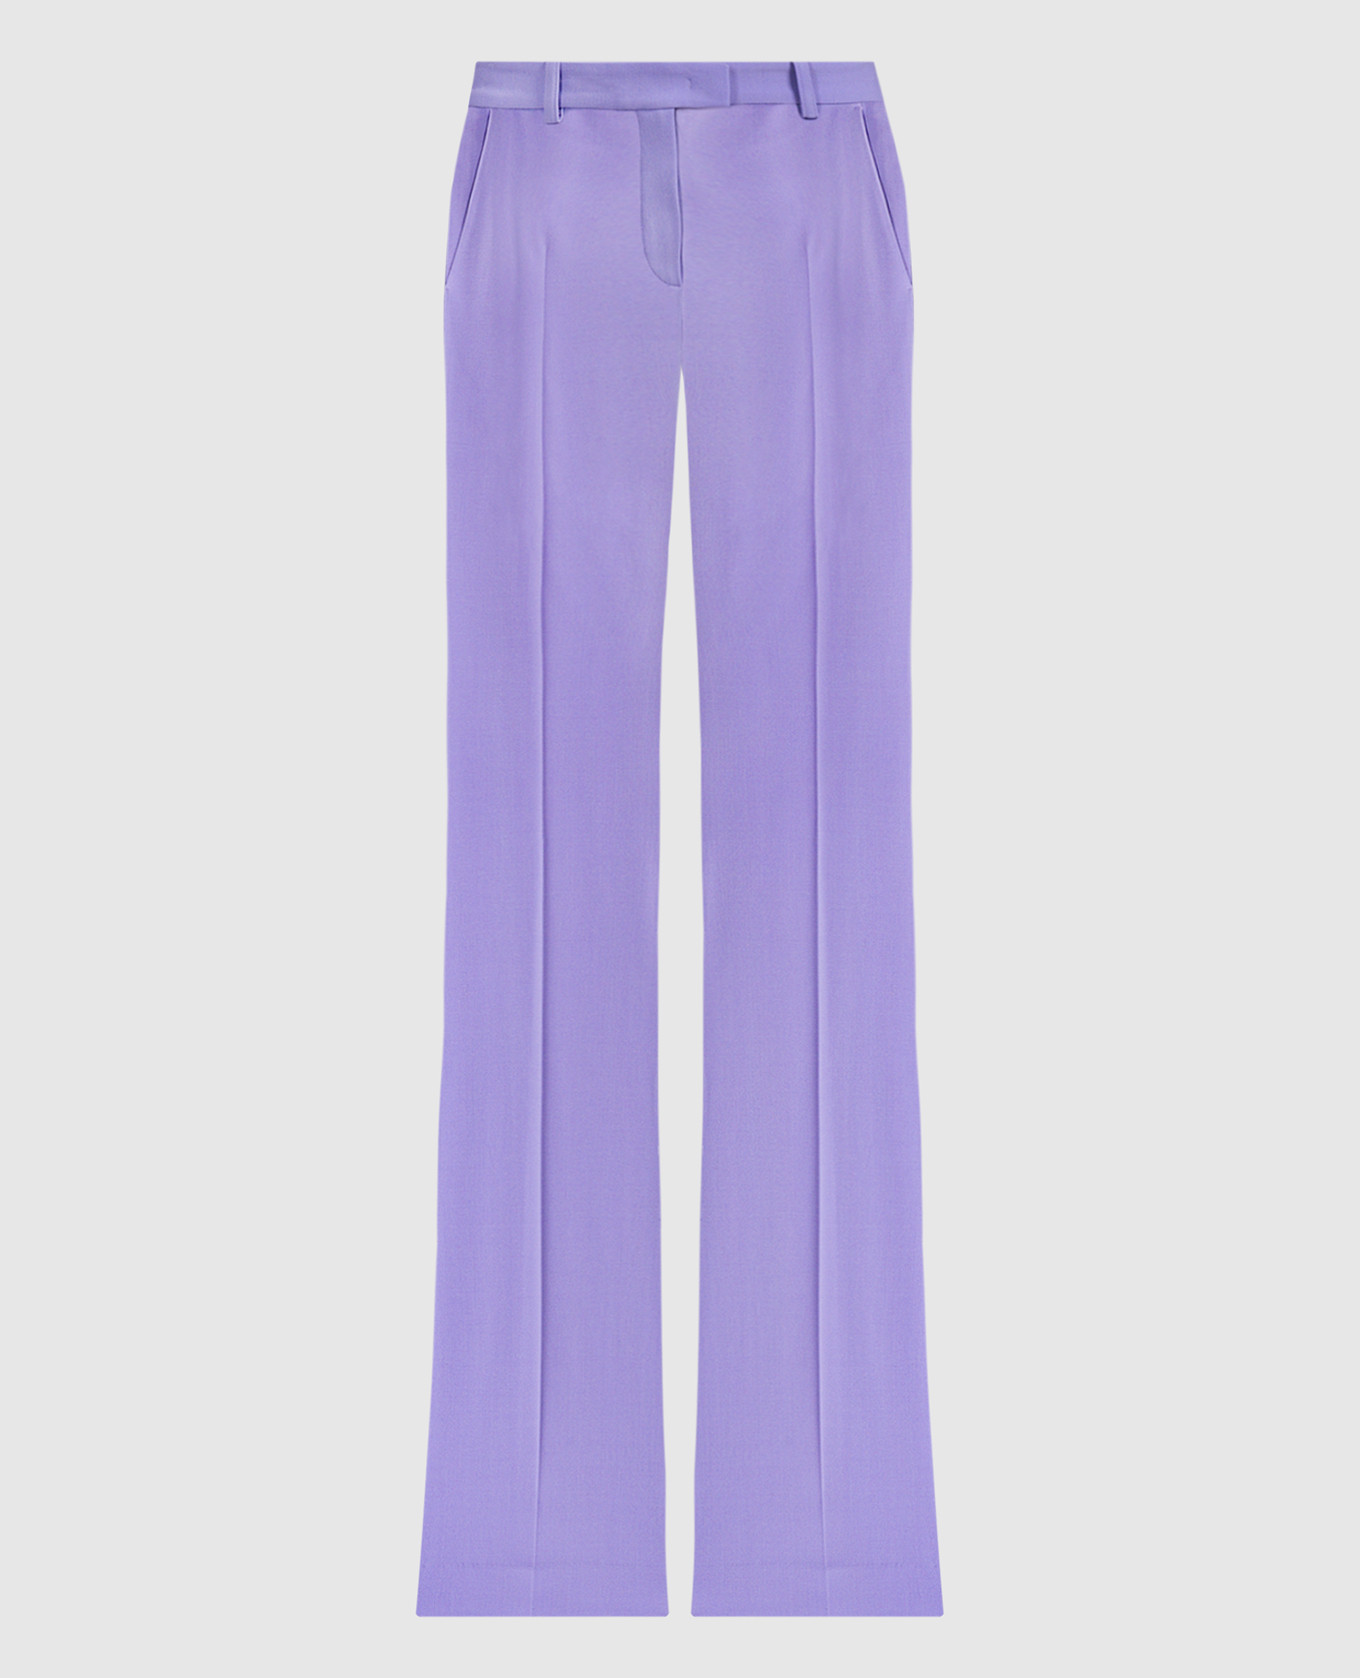 Фиолетовые брюки клеш Haylee из шерсти